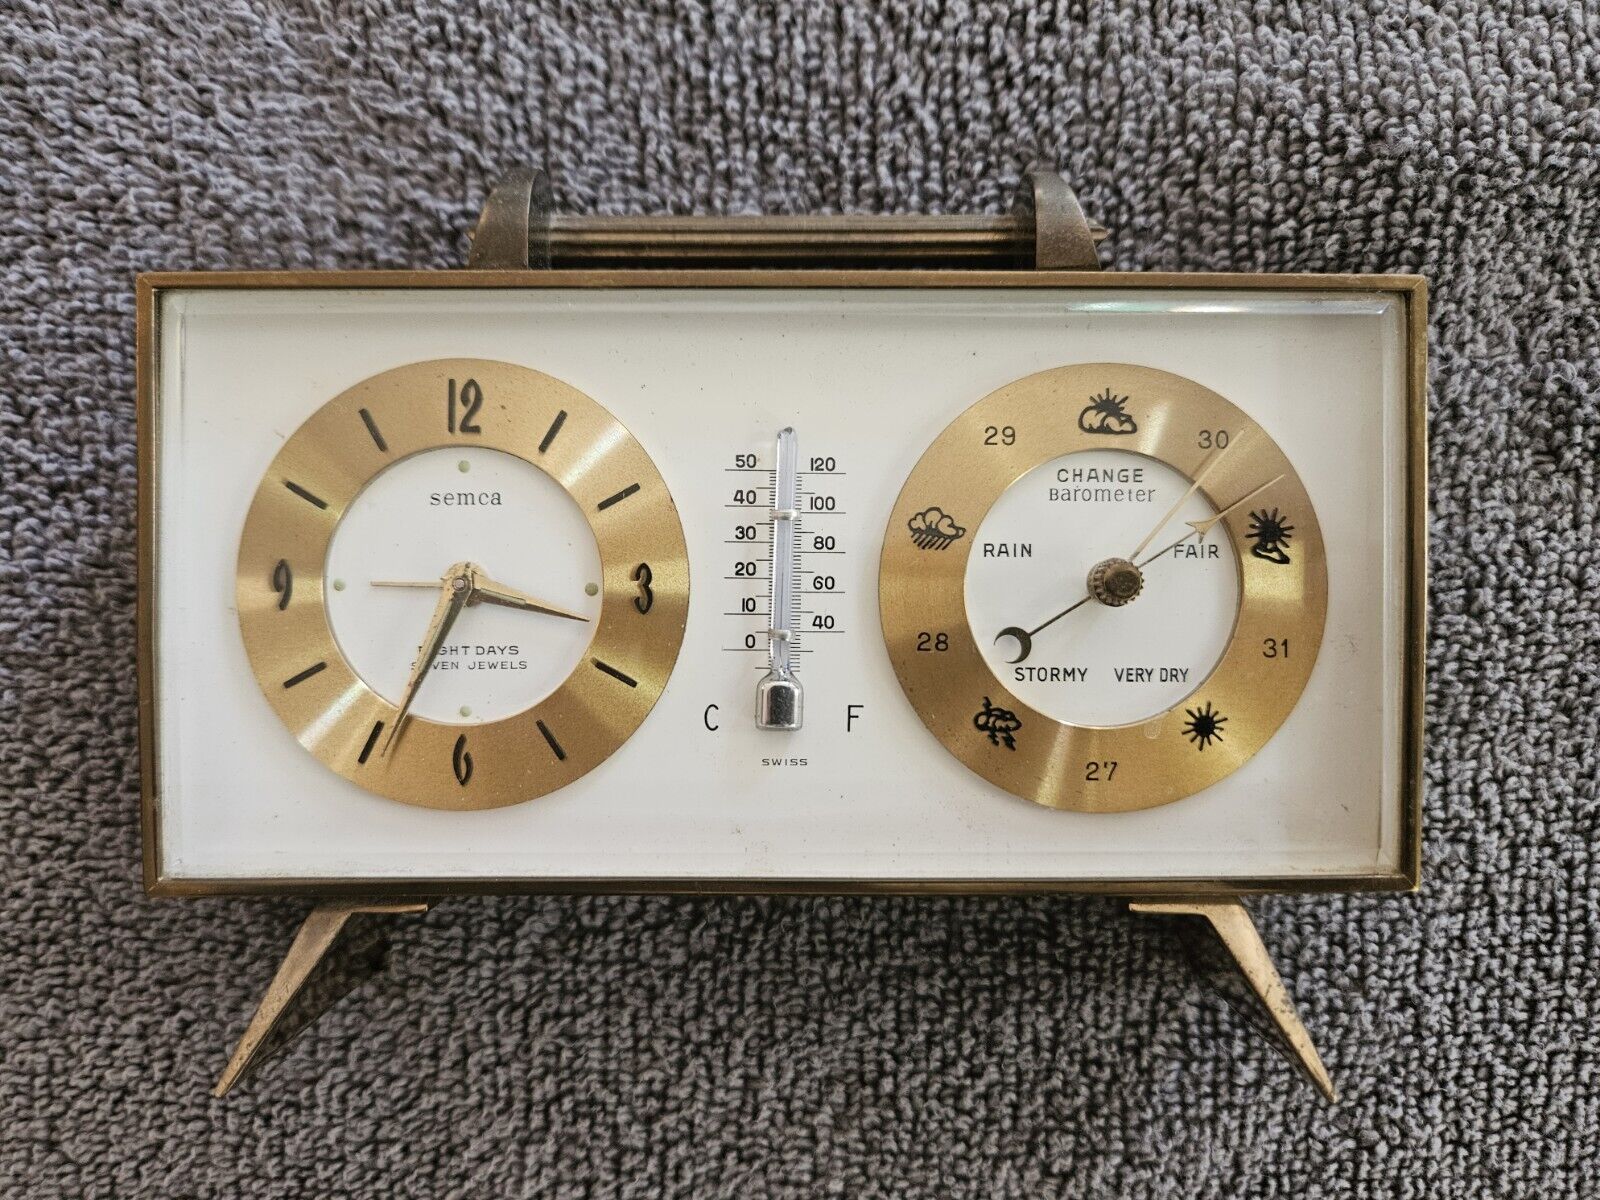 Vintage Semca Pendulette Desk Set with Weather Station - Clock - Barometer